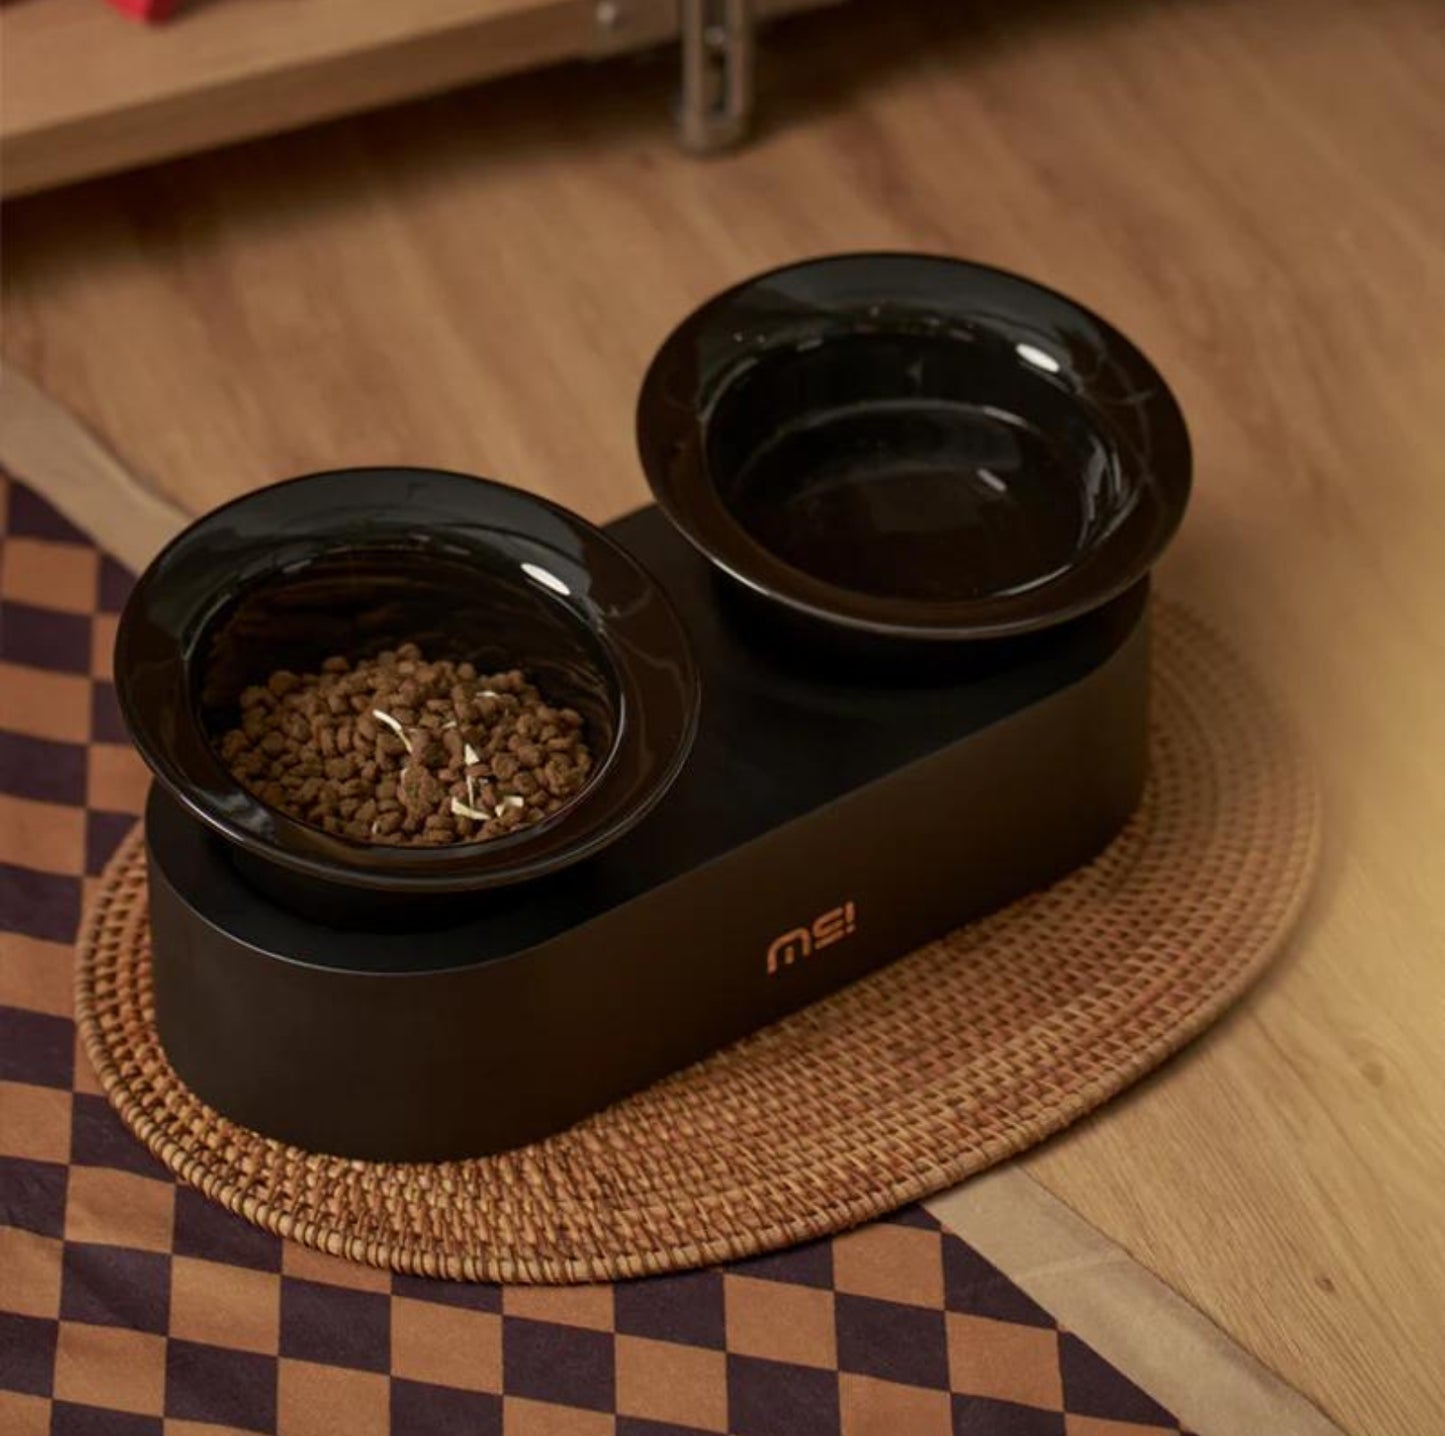 MAKESURE Jingle 2-in-1 Ceramic Pet Bowl Set for Food & Water Cat Bowls